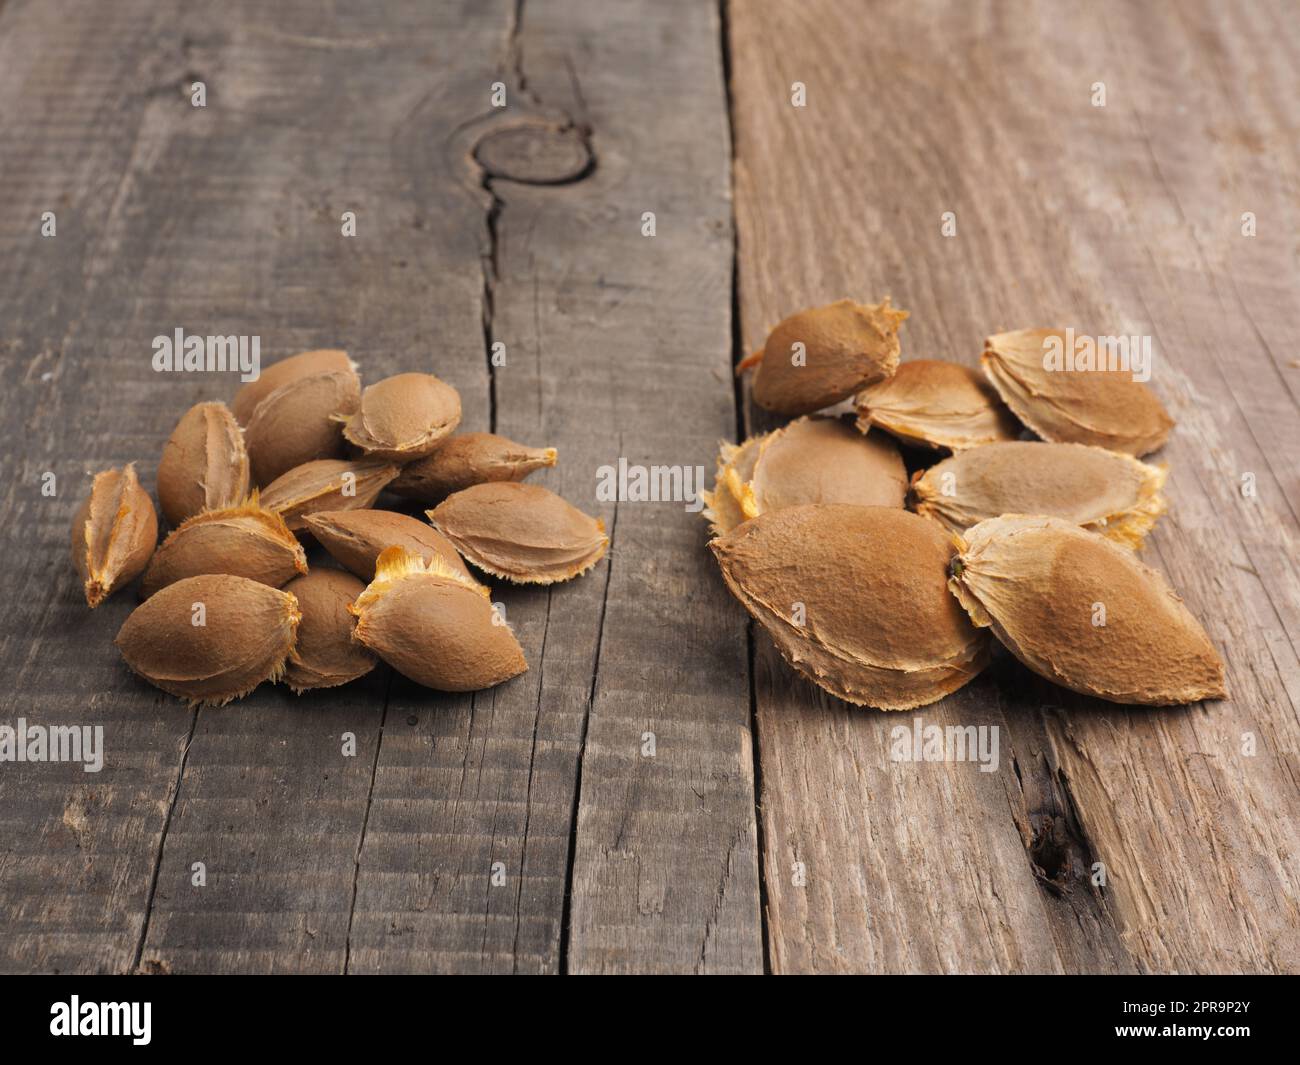 Samen von Zuckeraprikosen und gewöhnlichen Aprikosen/Marillen Stockfoto